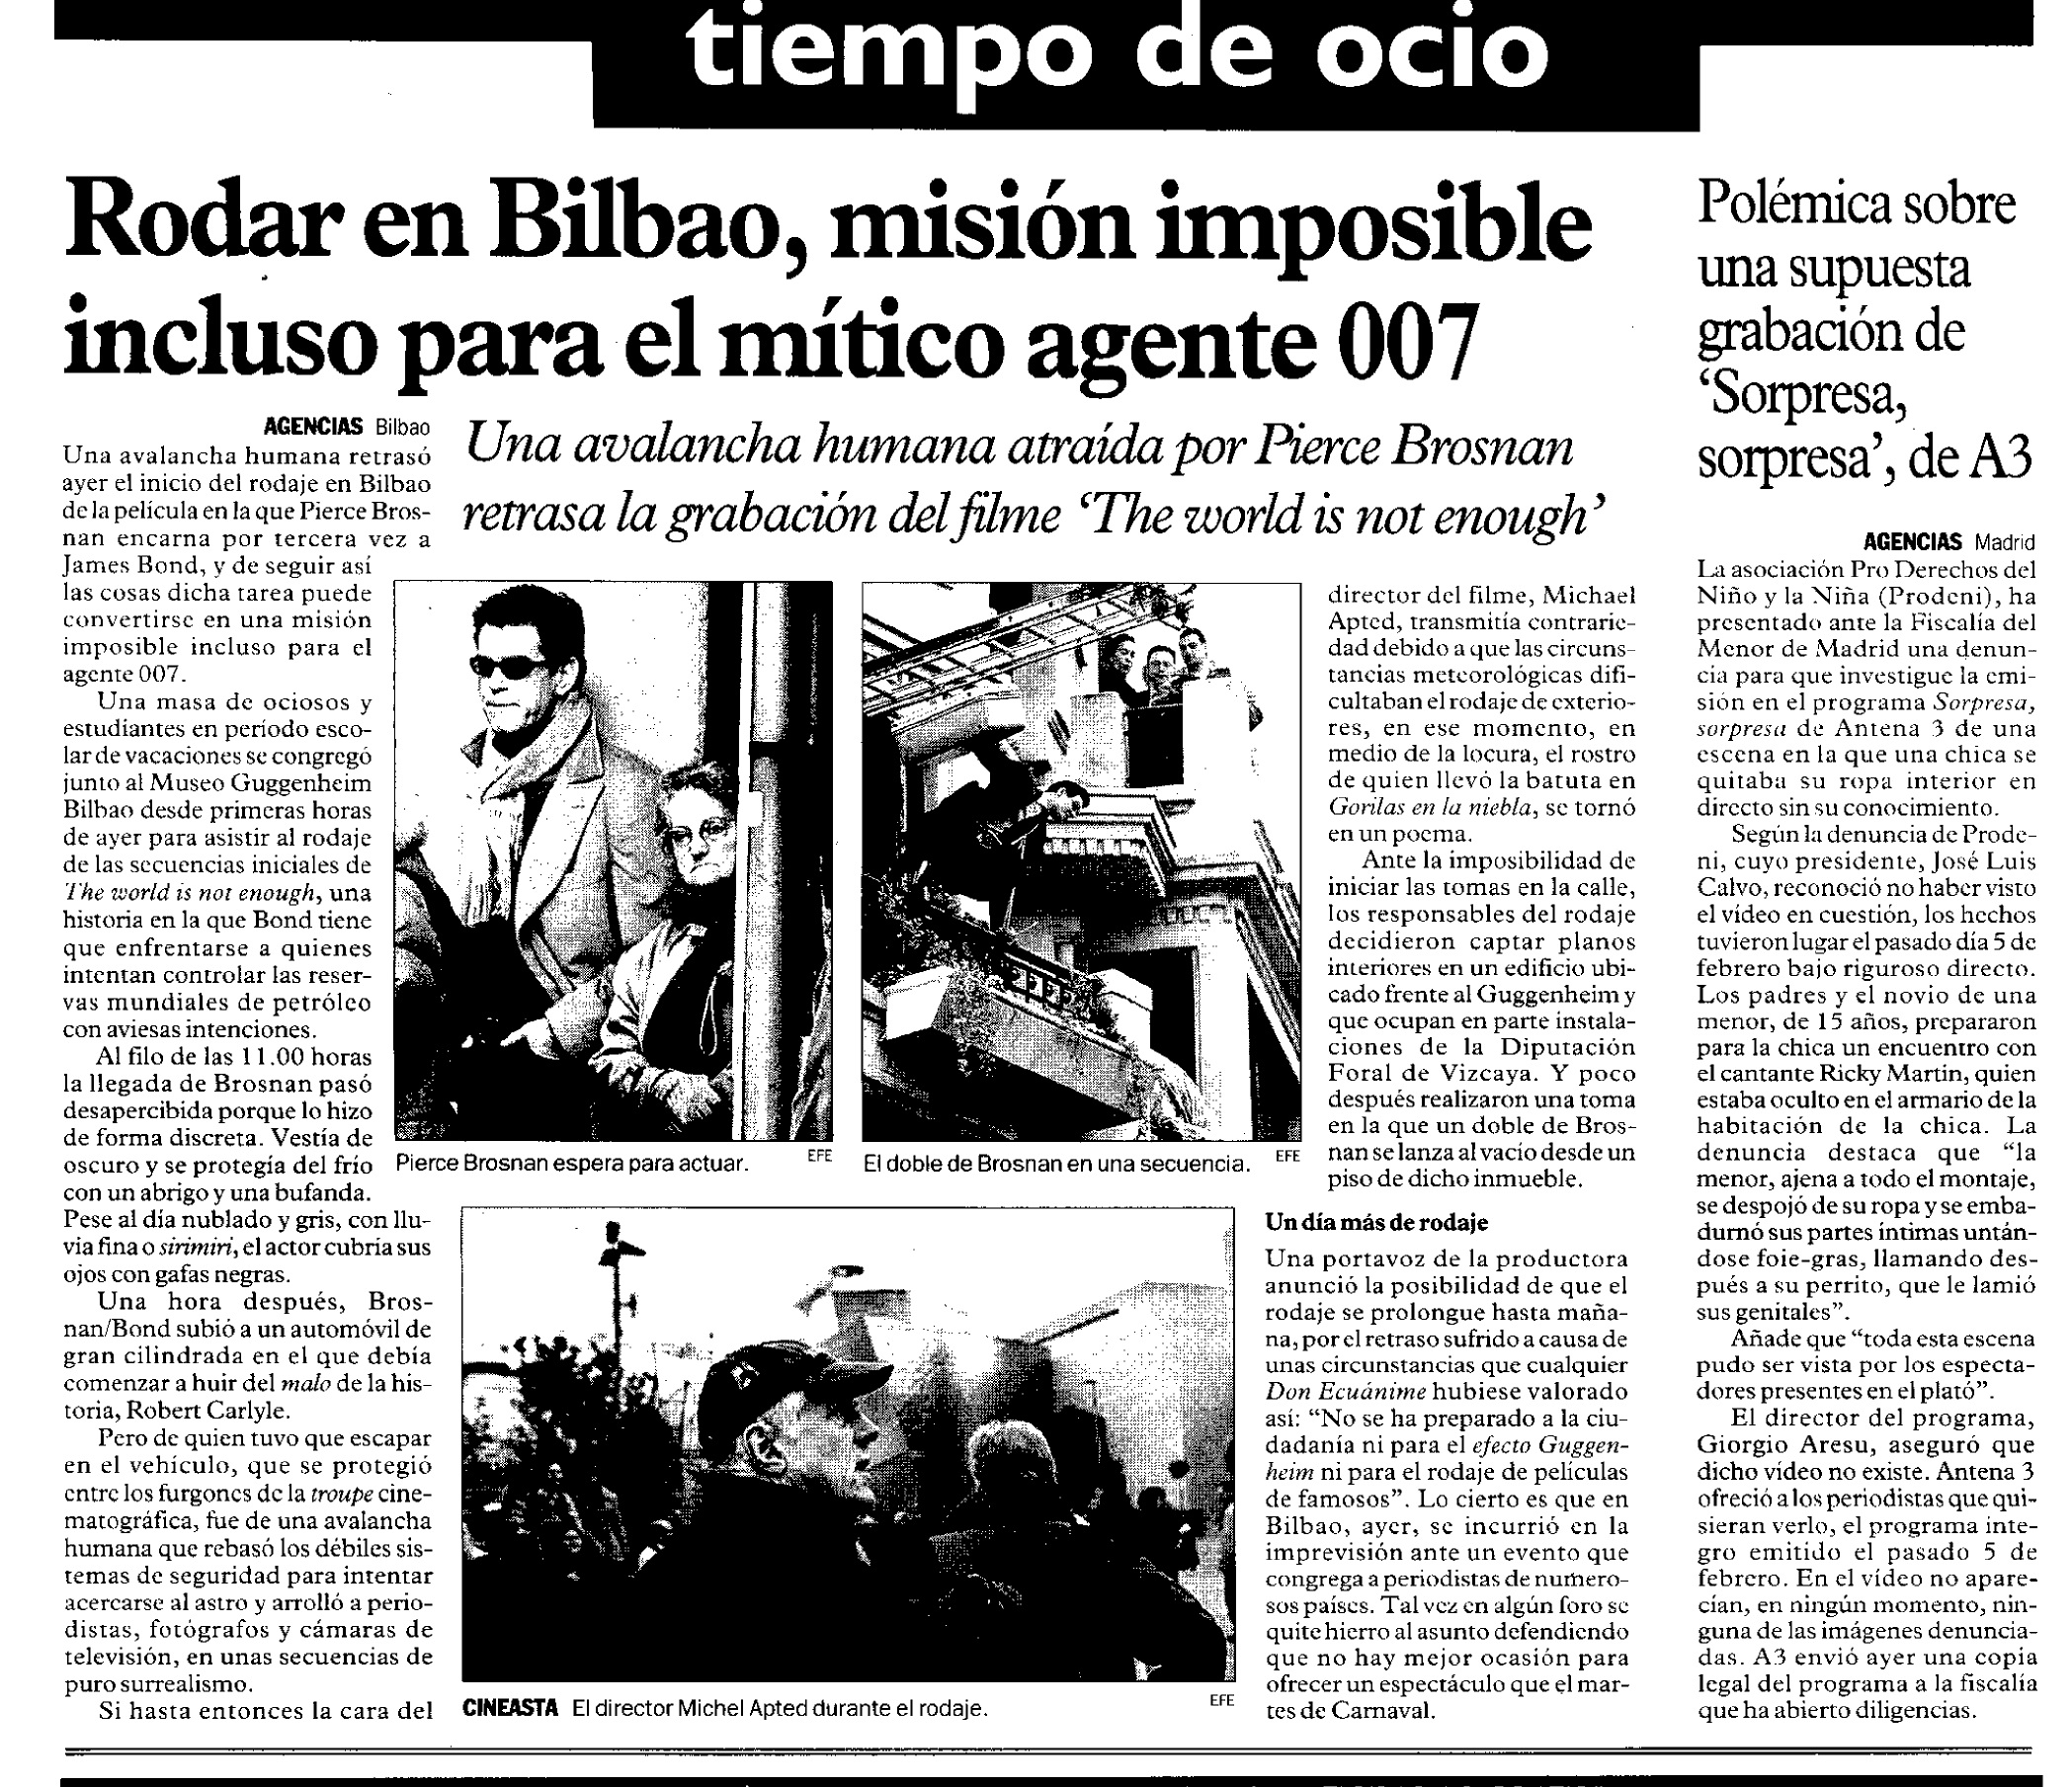 19 1999 02 17 Diario de Noticias Navarra 59 Rodaje Bilbao